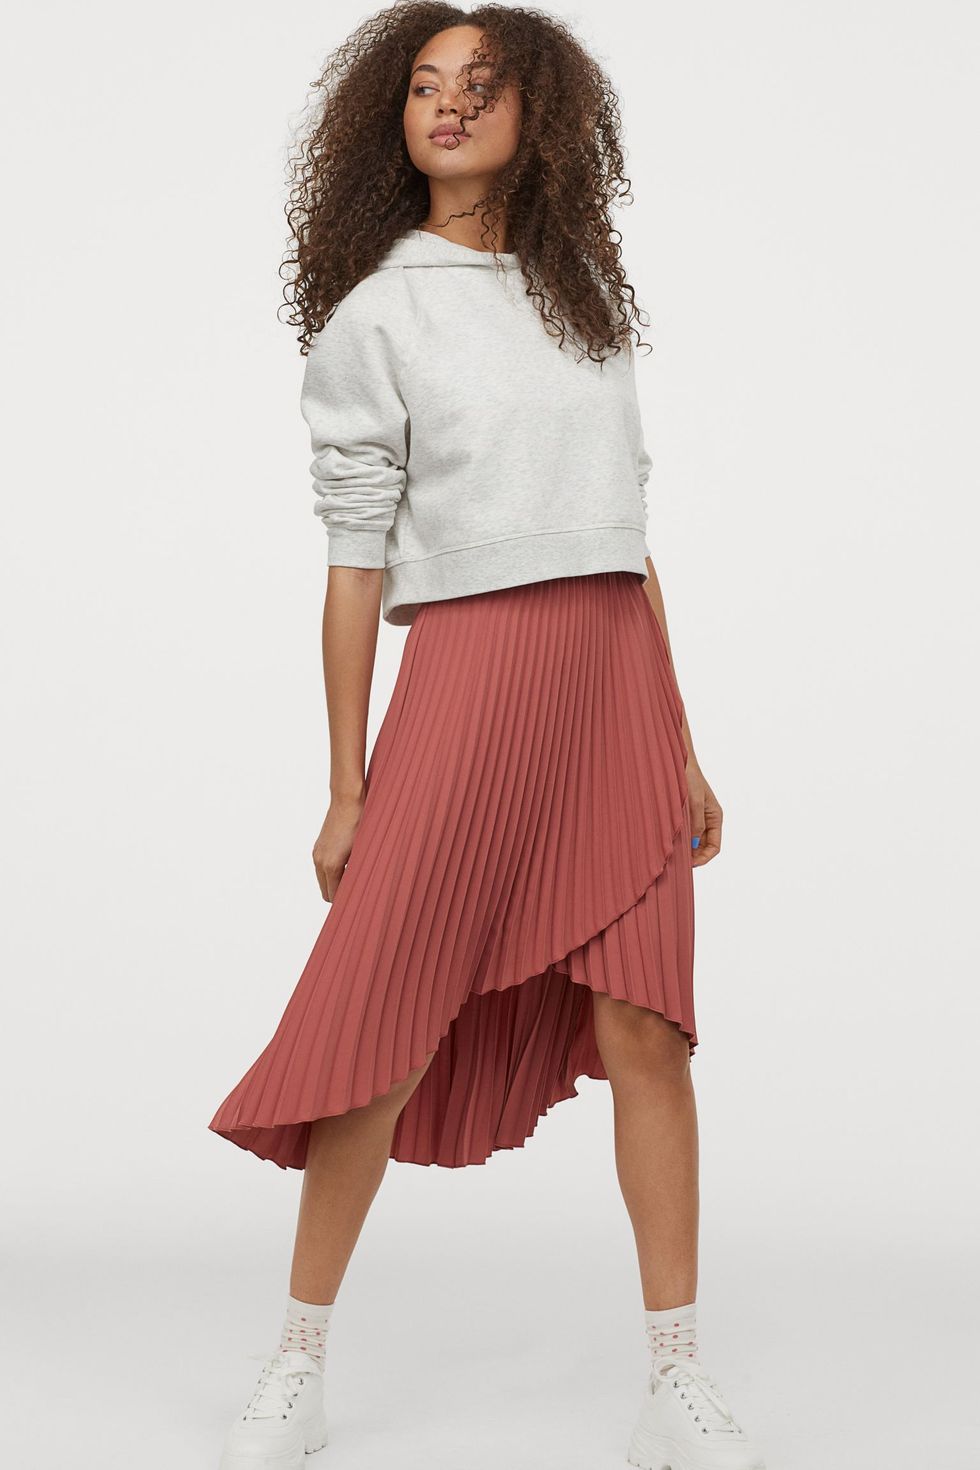 H&M diseña la falda plisada favorece bajitas con curvas